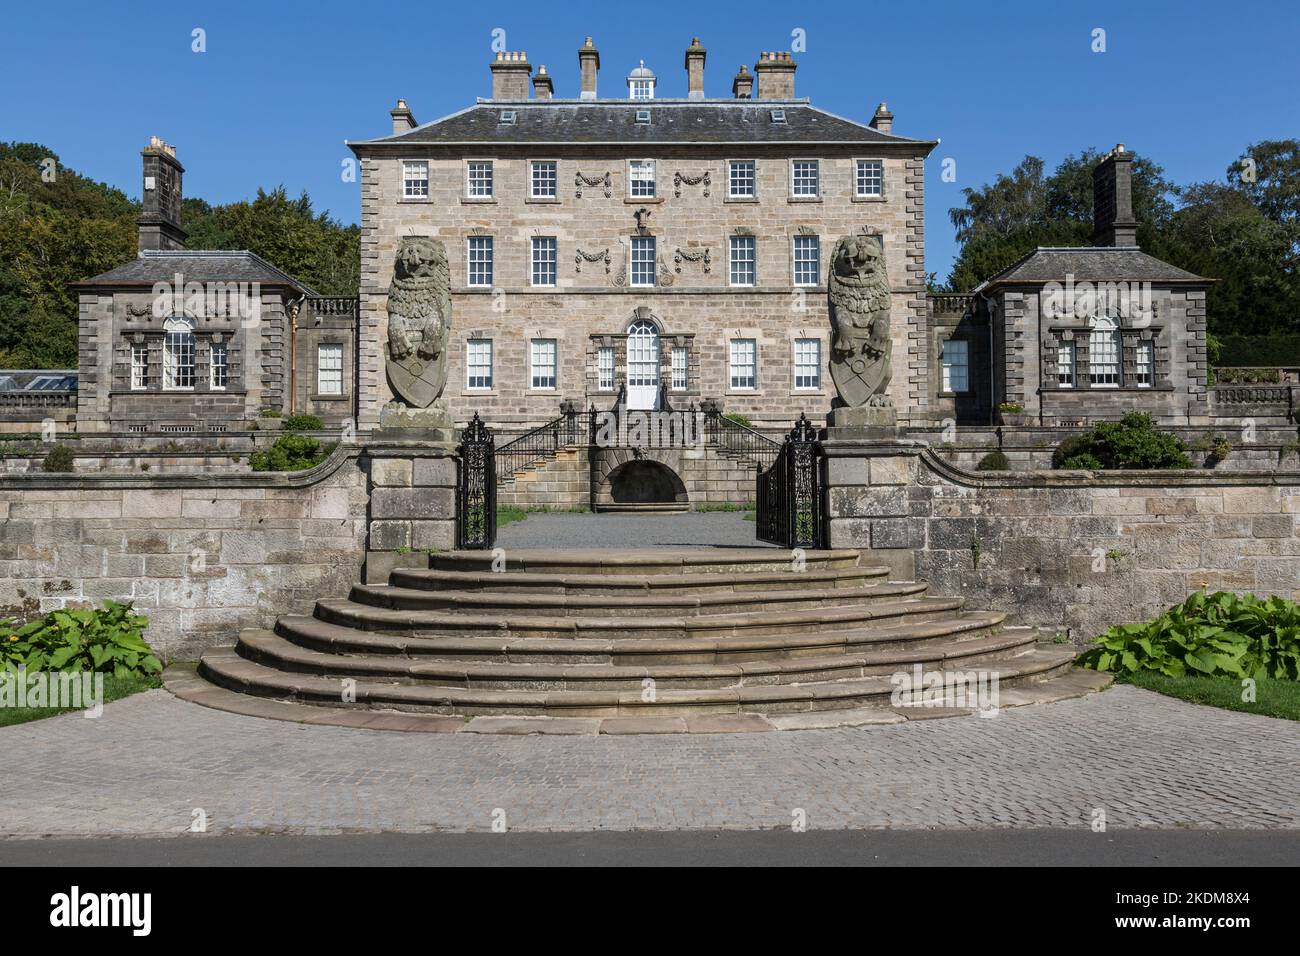 Pollok House géré par le National Trust for Scotland dans Pollok Country Park, Glasgow, Écosse, Royaume-Uni, Europe Banque D'Images